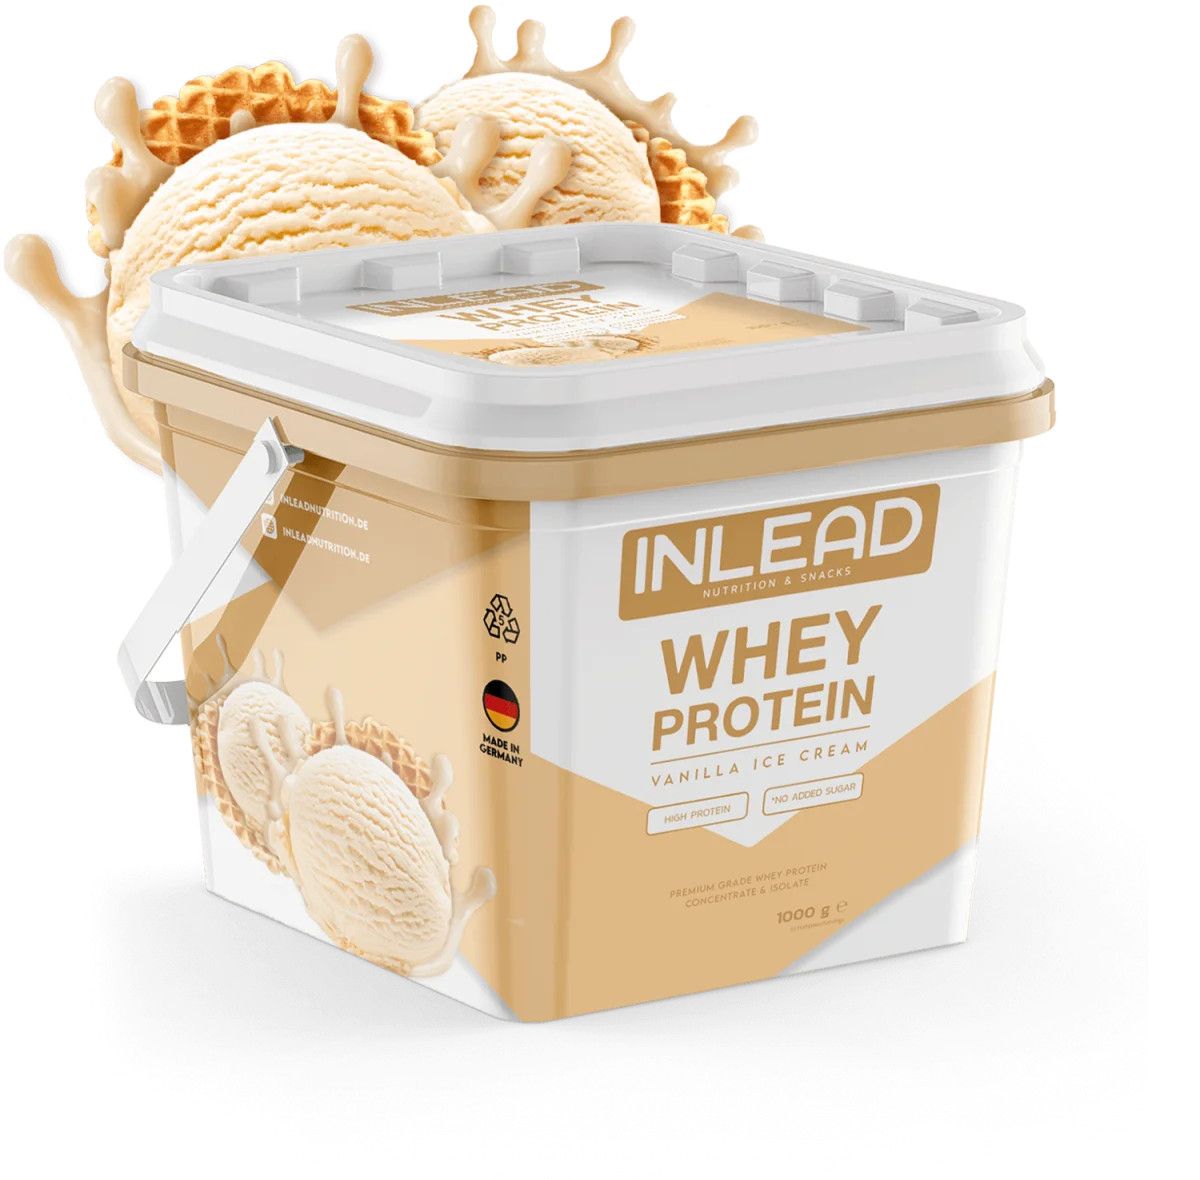 Inlead Whey Protein - Vanilla Ice Cream